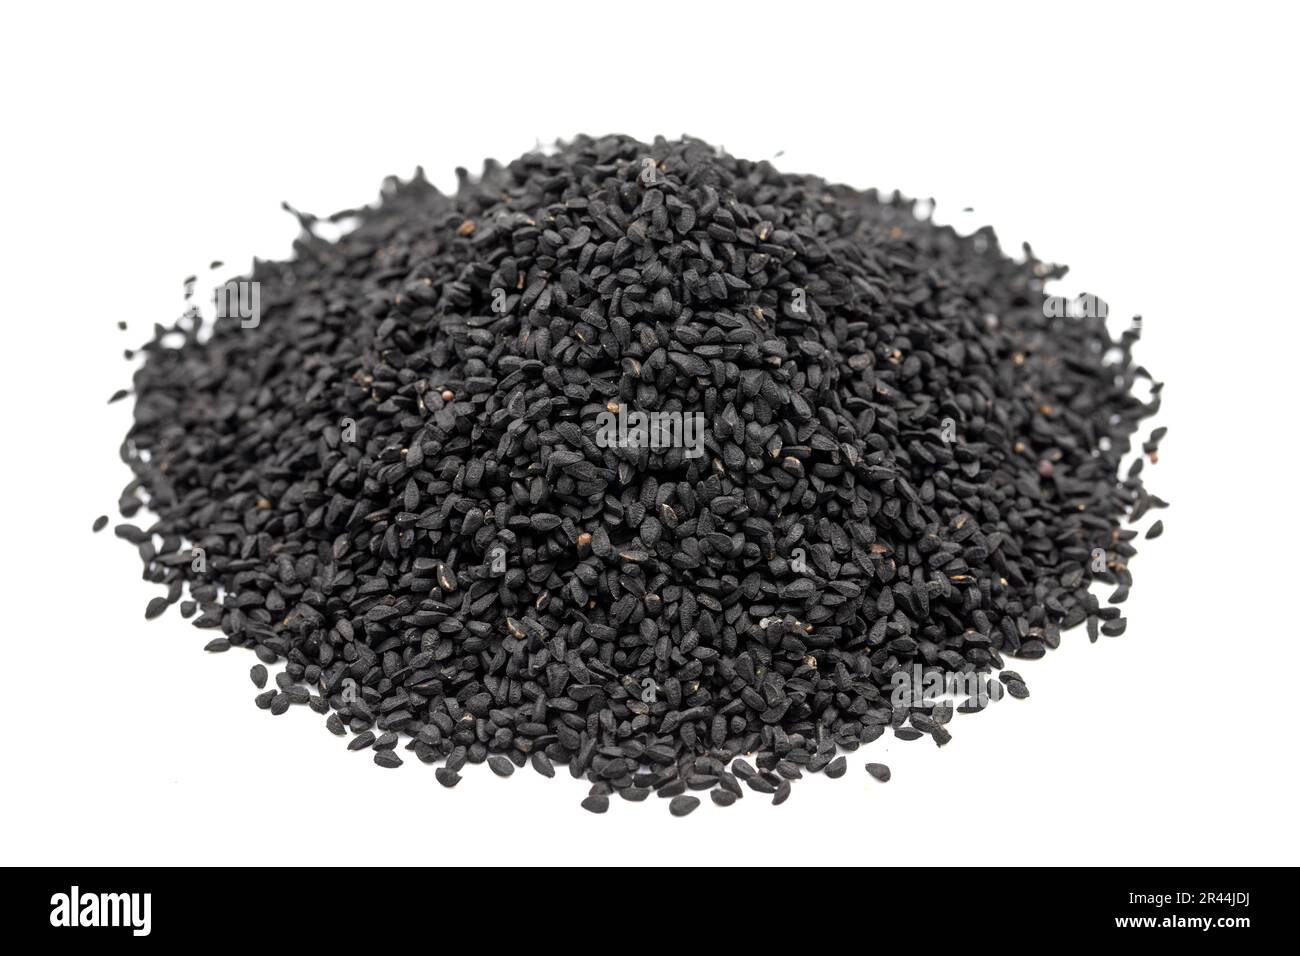 Cumino nero o nigella sativa isolato su sfondo bianco. Mucchio di semi di cumino nero. Kalonji, nigella, cumino nero. Primo piano Foto Stock